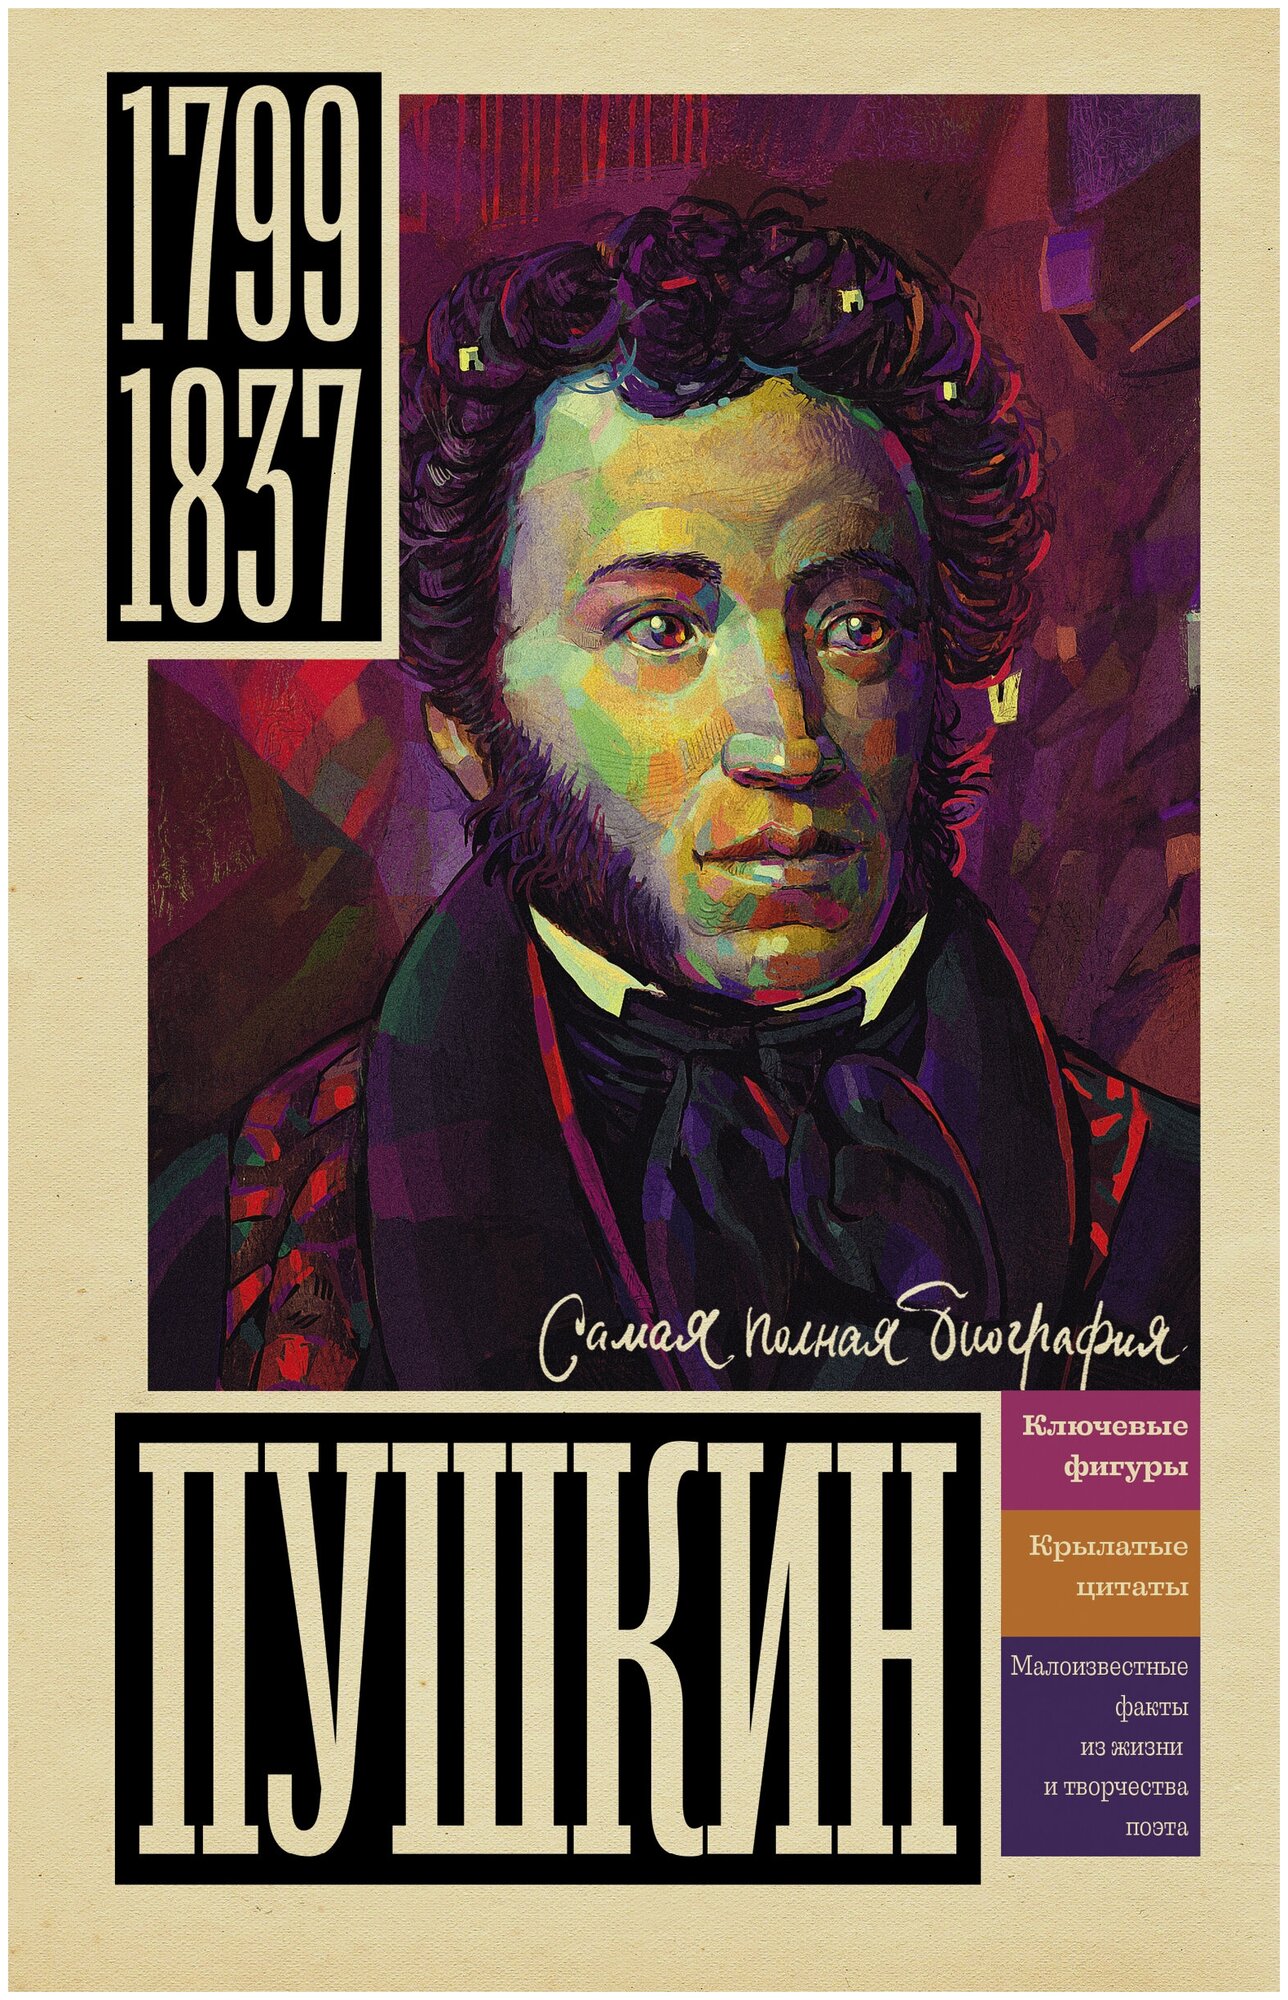 Пушкин (Ризнич Иона) - фото №1